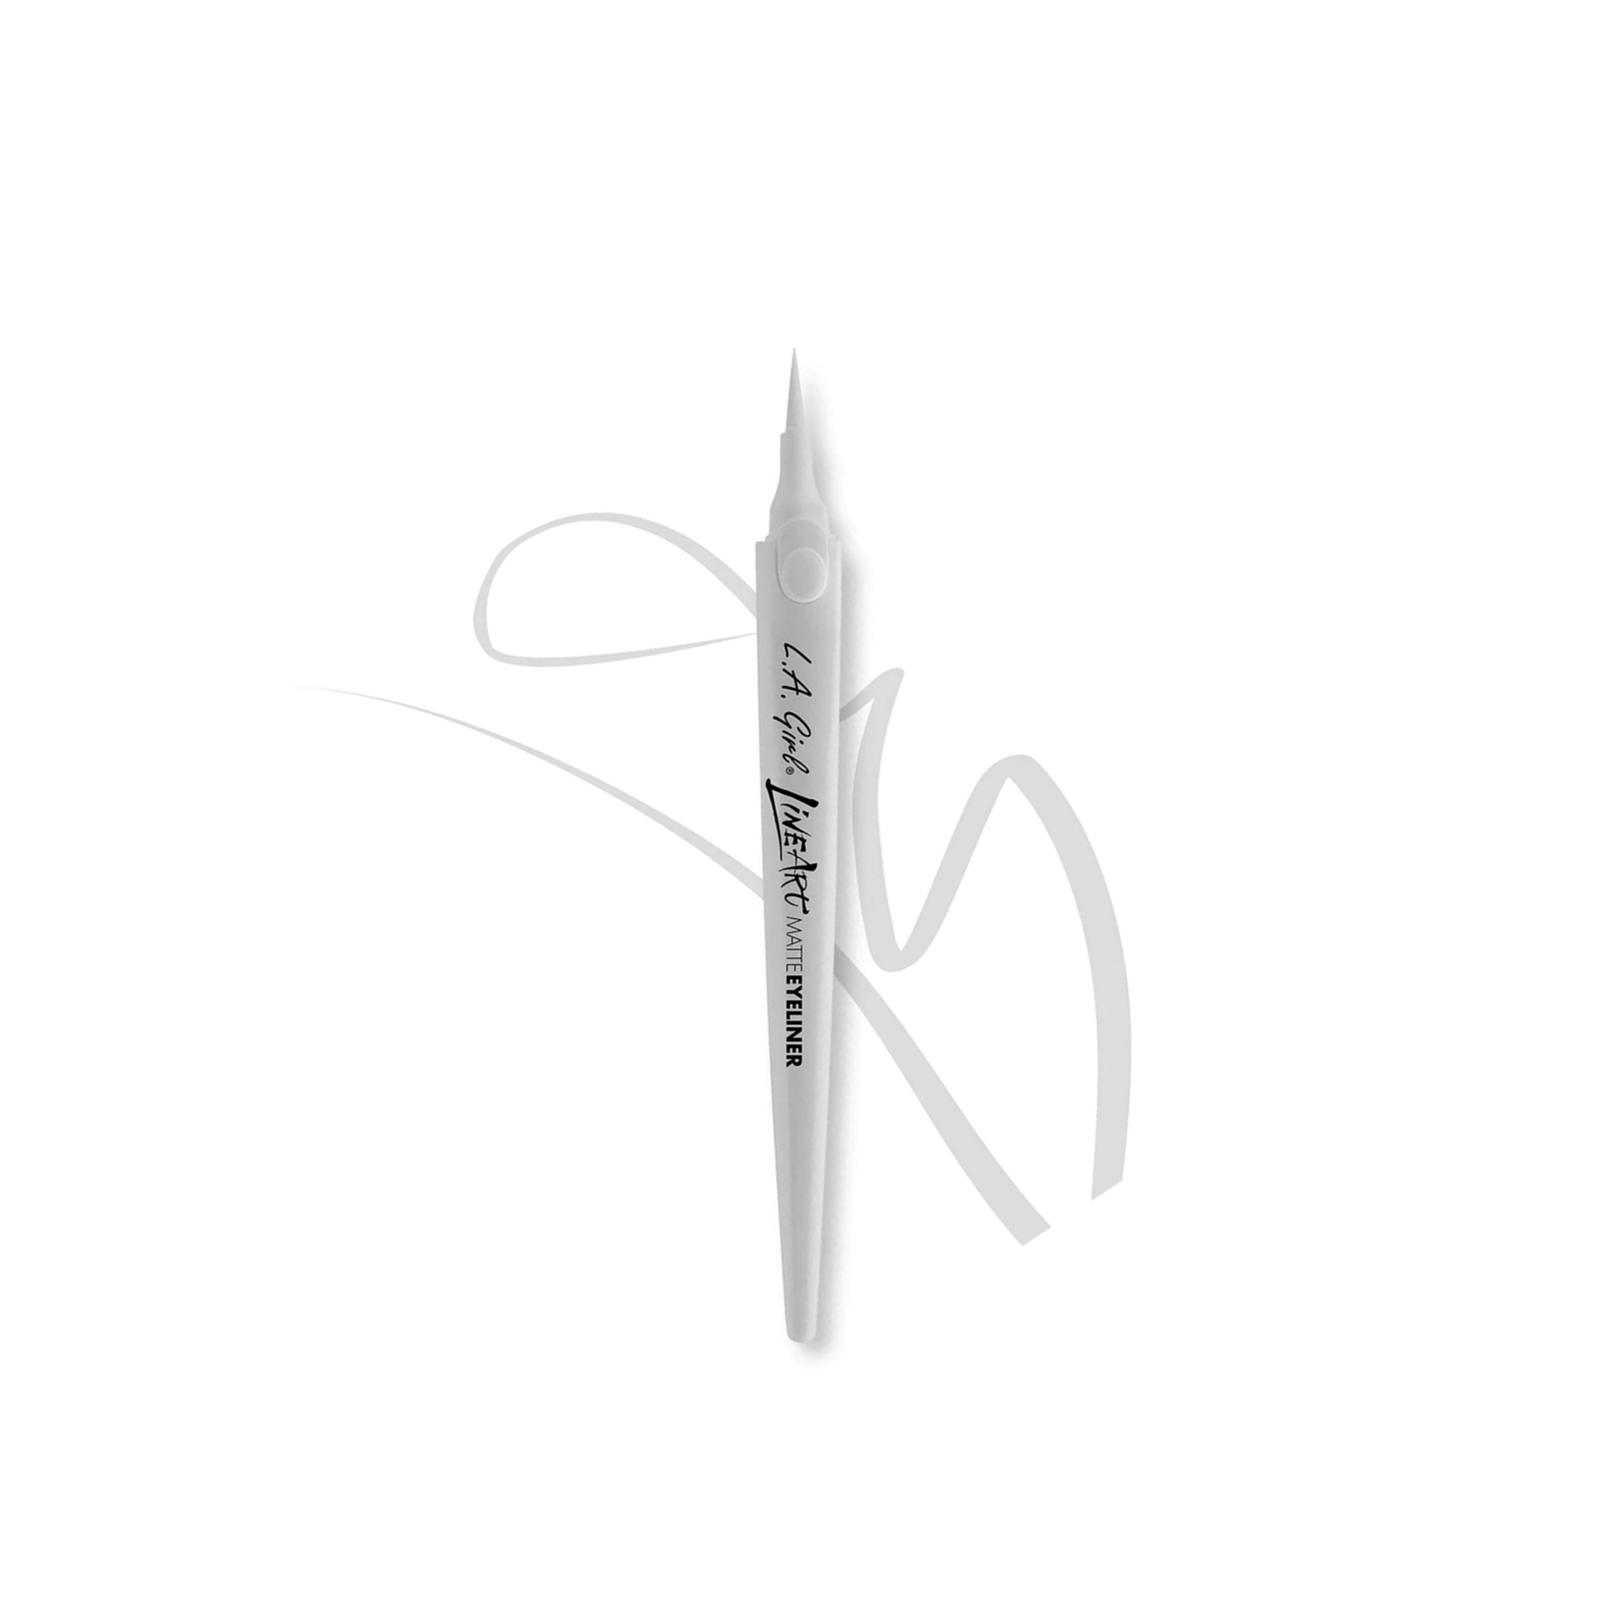 L.A. Girl Line Art Matte Eyeliner Pen Pure White 0.4ml